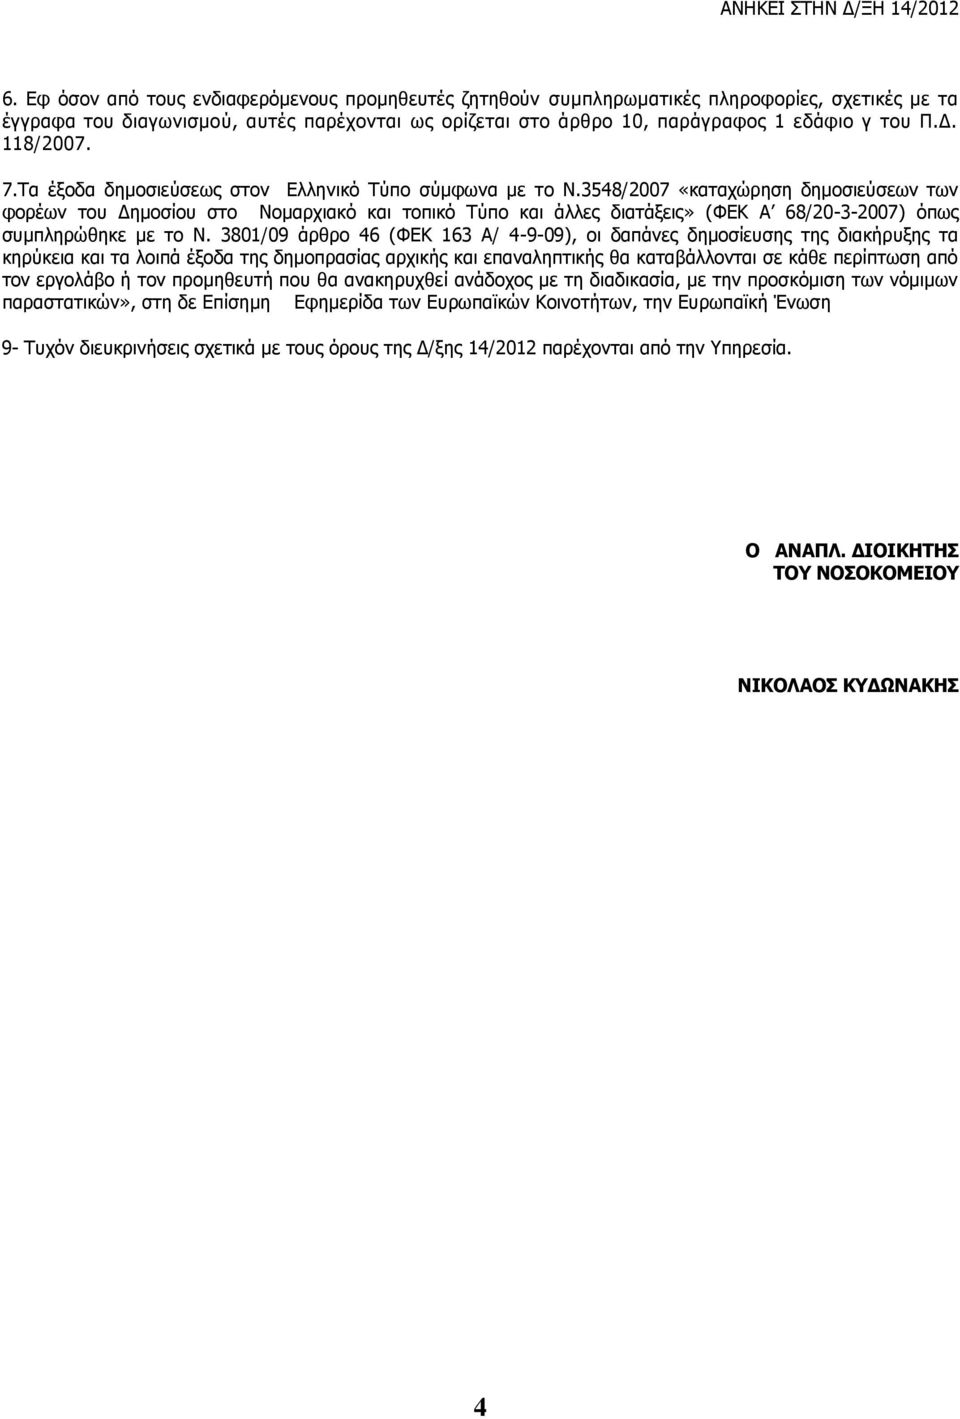 3548/2007 «καταχώρηση δημοσιεύσεων των φορέων του Δημοσίου στο Νομαρχιακό και τοπικό Τύπο και άλλες διατάξεις» (ΦΕΚ Α 68/20-3-2007) όπως συμπληρώθηκε με το Ν.